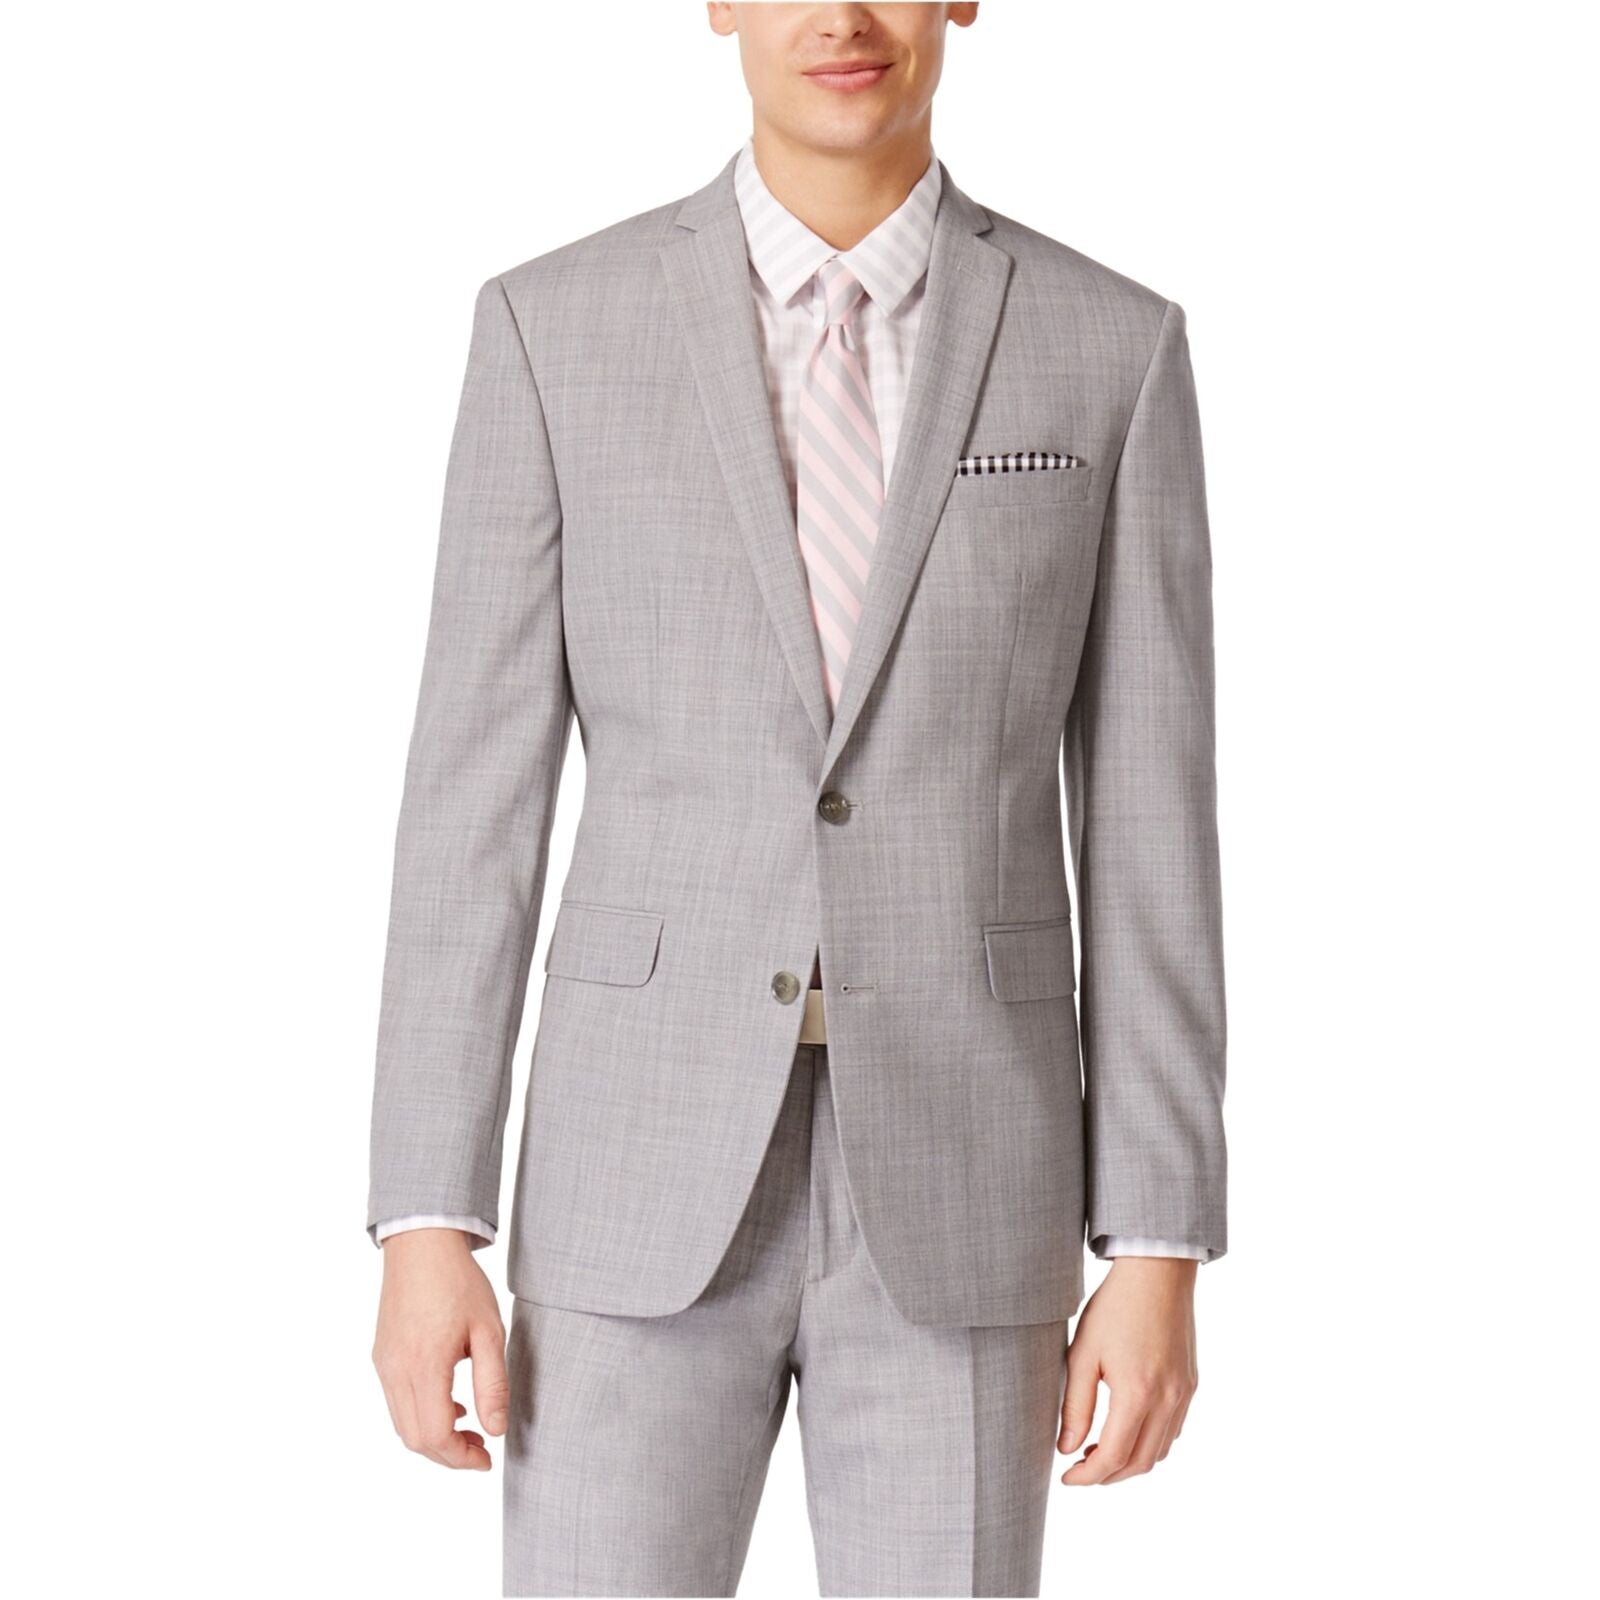 Bar III Men's Suit Jacket 44L Light Gray Slim Fit 2 Button